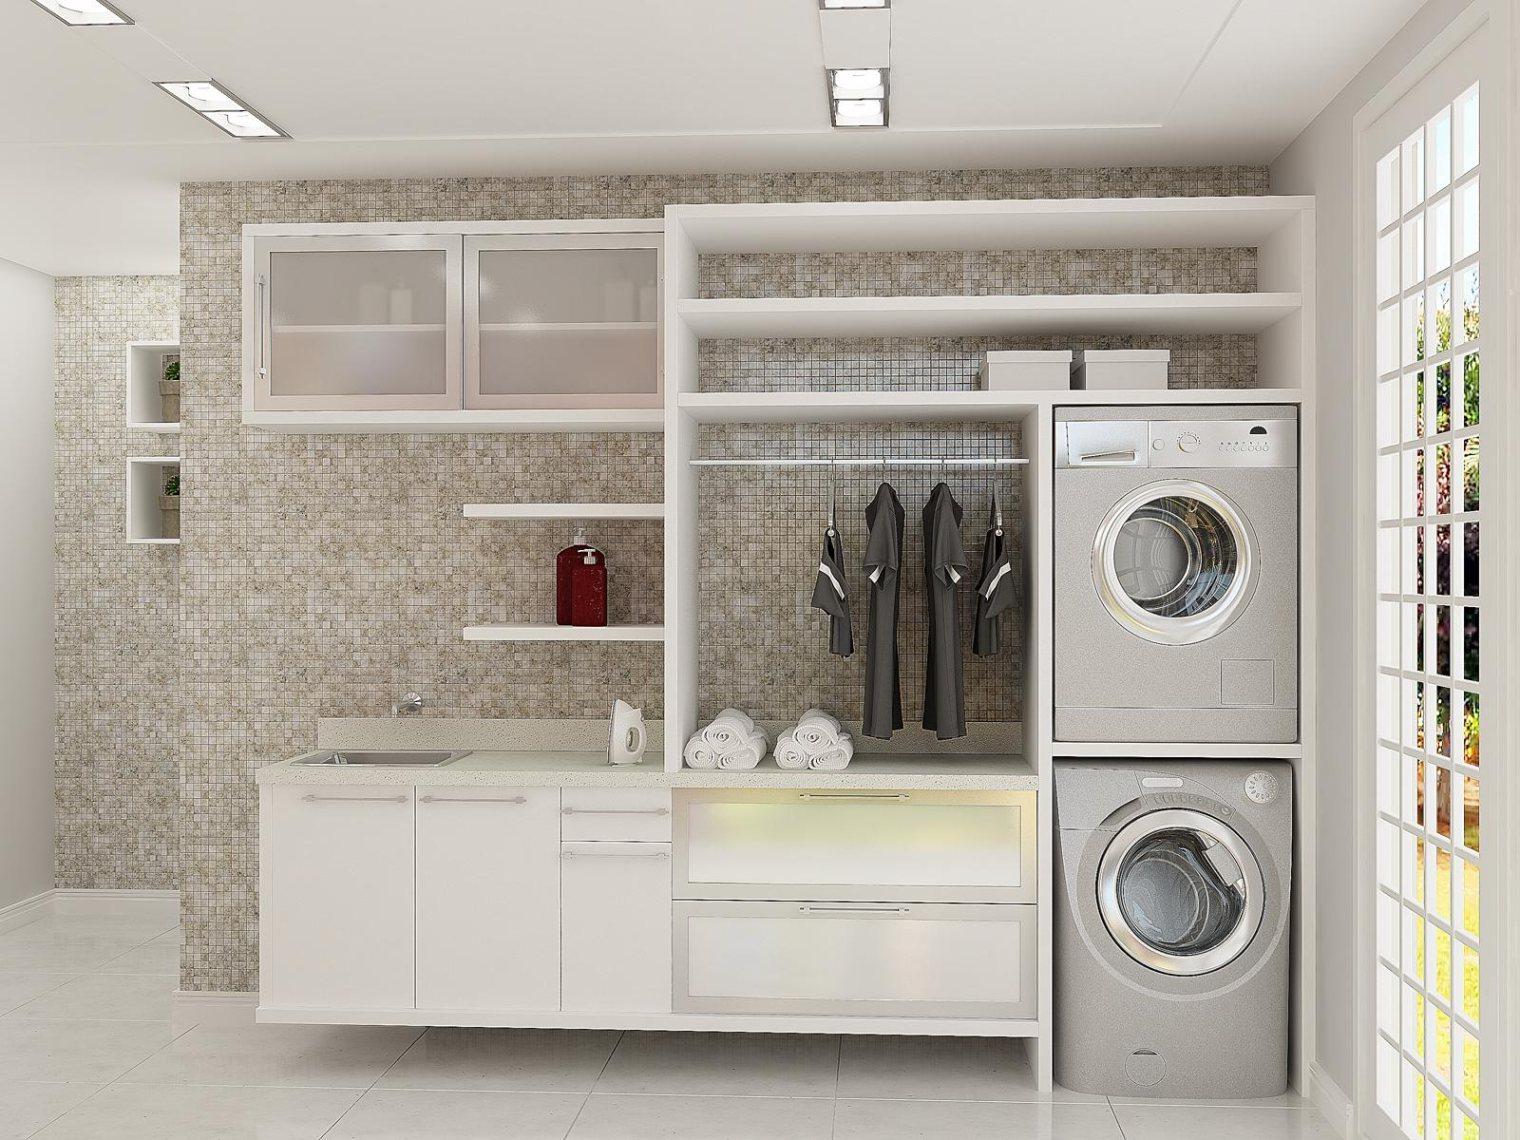 hình ảnh cận cảnh phòng giặt tông màu trung tính chủ đạo với giá kệ mở gắn tường, máy giặt và máy sấy đặt ở dưới, cạnh đó là khung cửa sổ kính ngập tràn ánh sáng tự nhiên